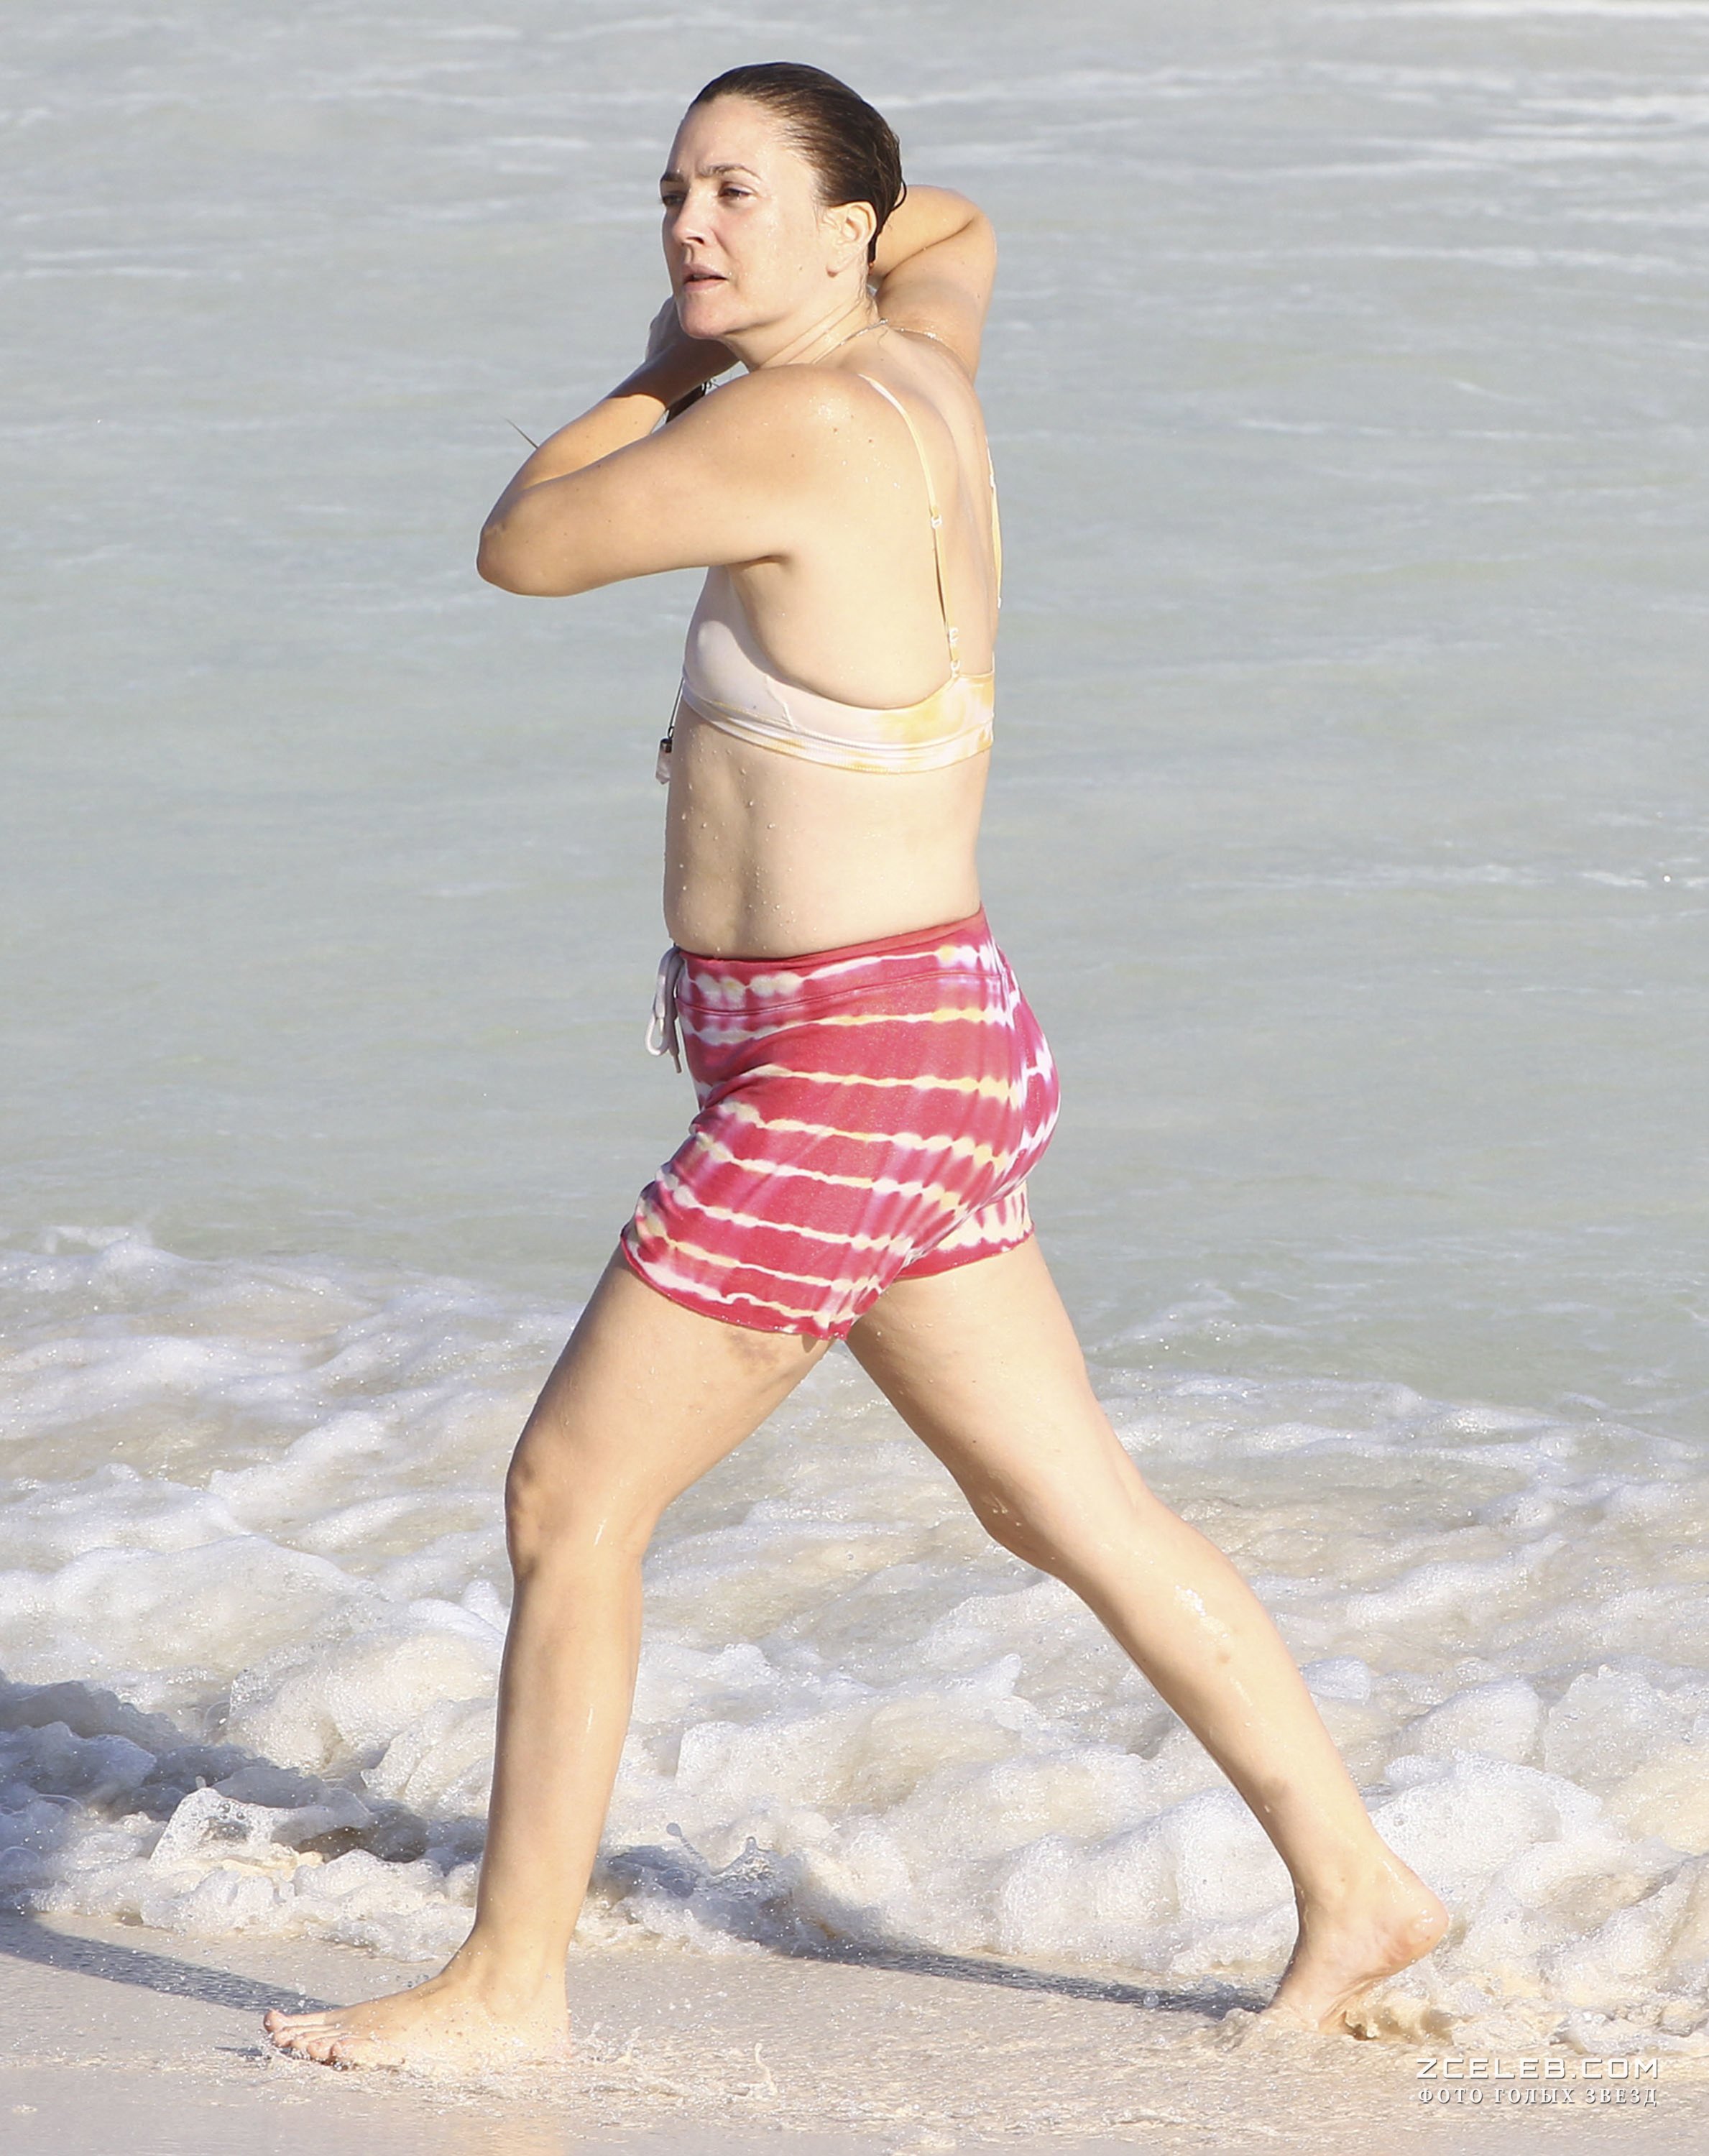 Торчащие соски Дрю Бэрримор в купальнике на пляже Майами, 12.11.20167